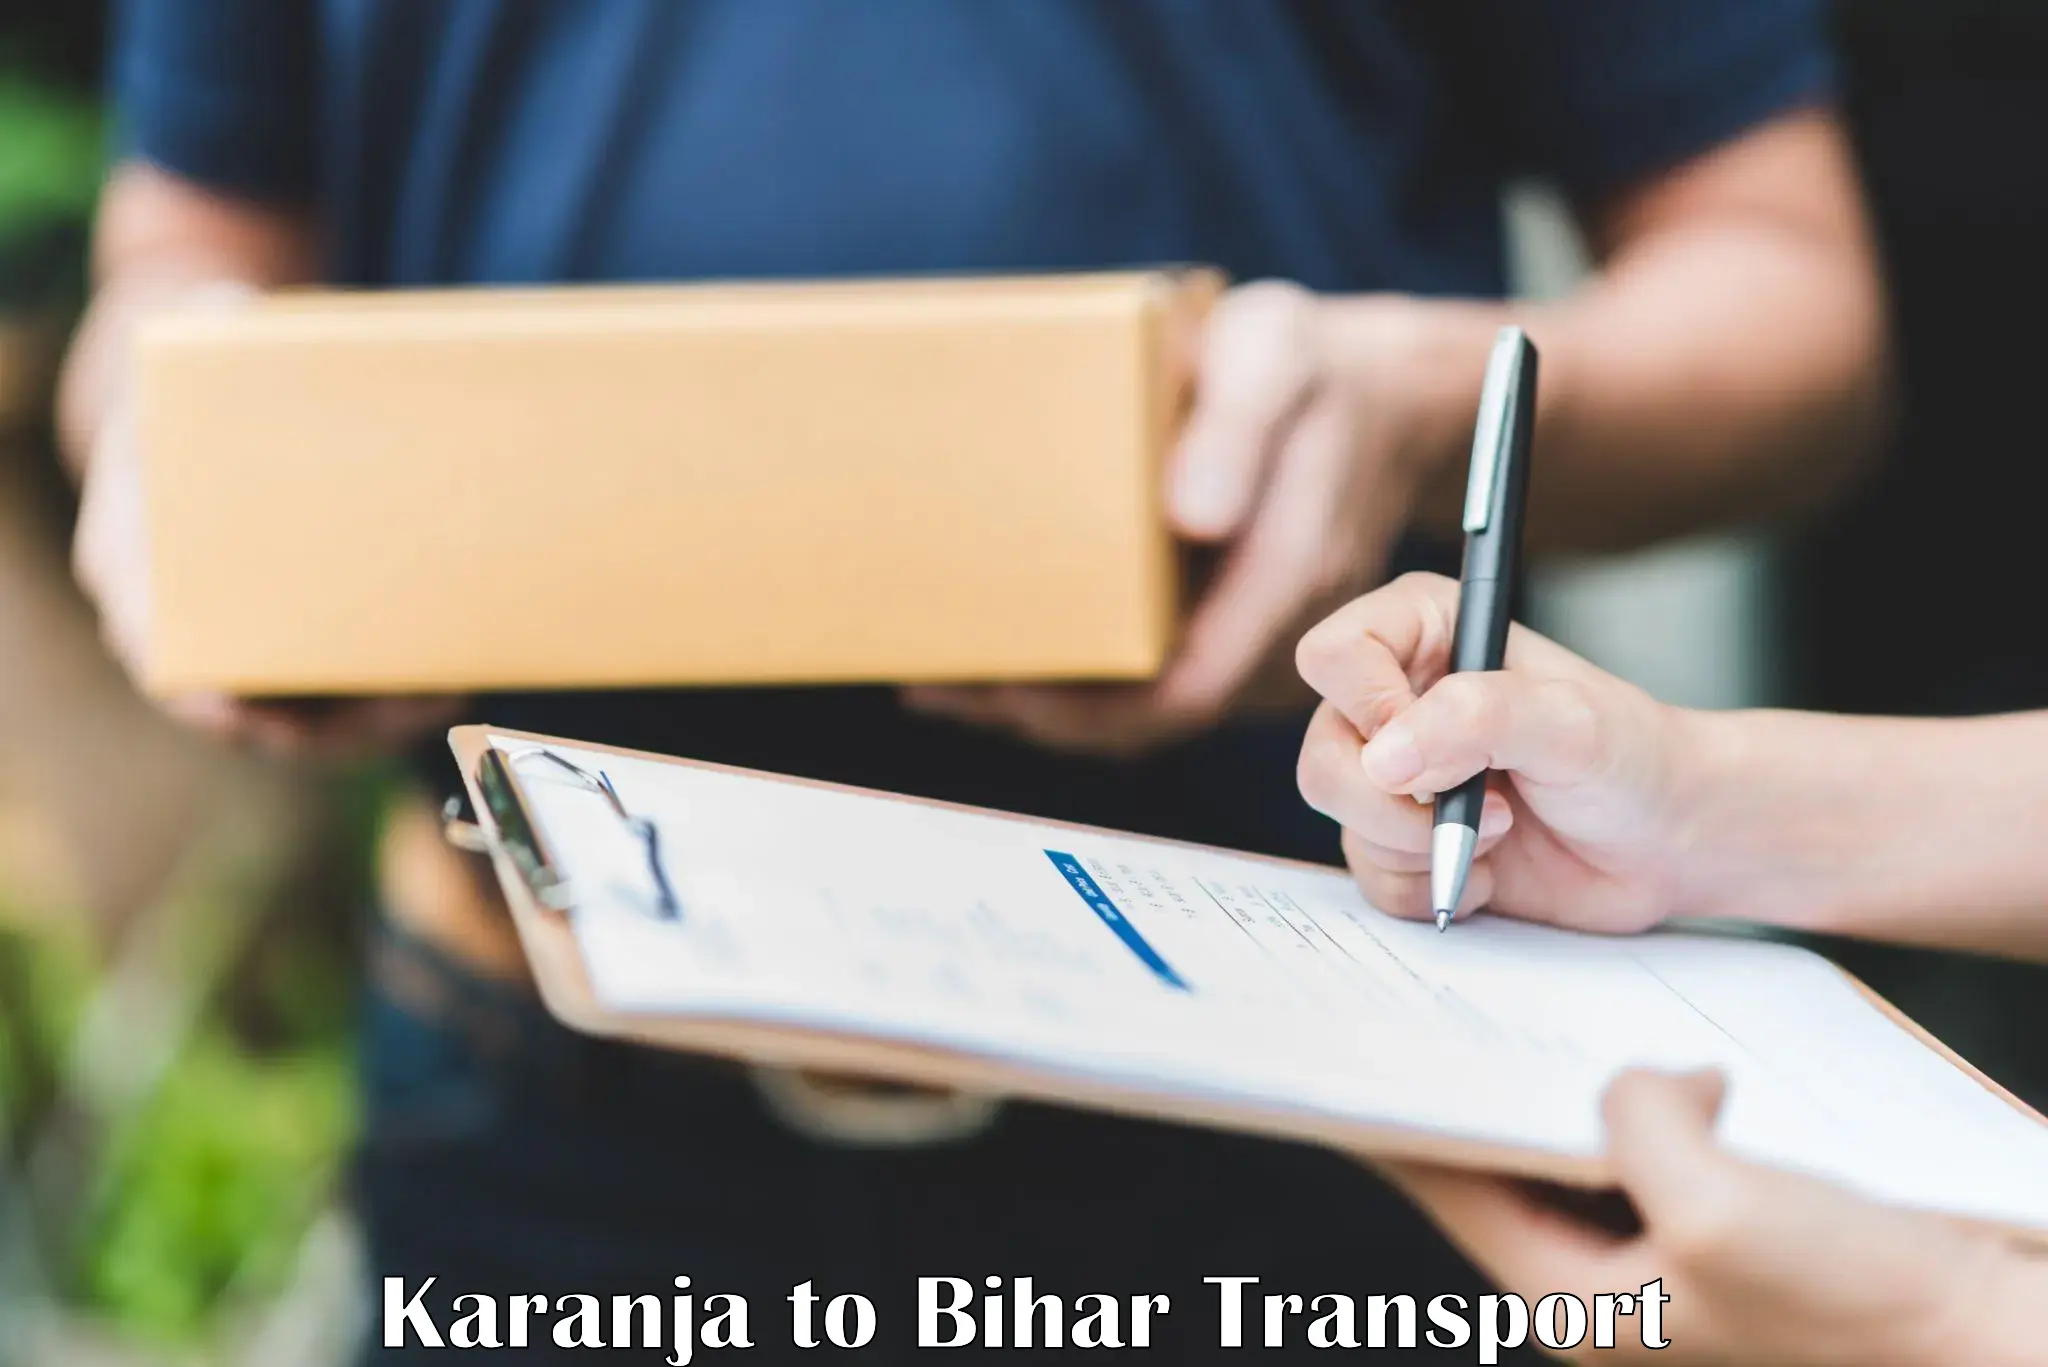 Goods transport services Karanja to Muzaffarpur